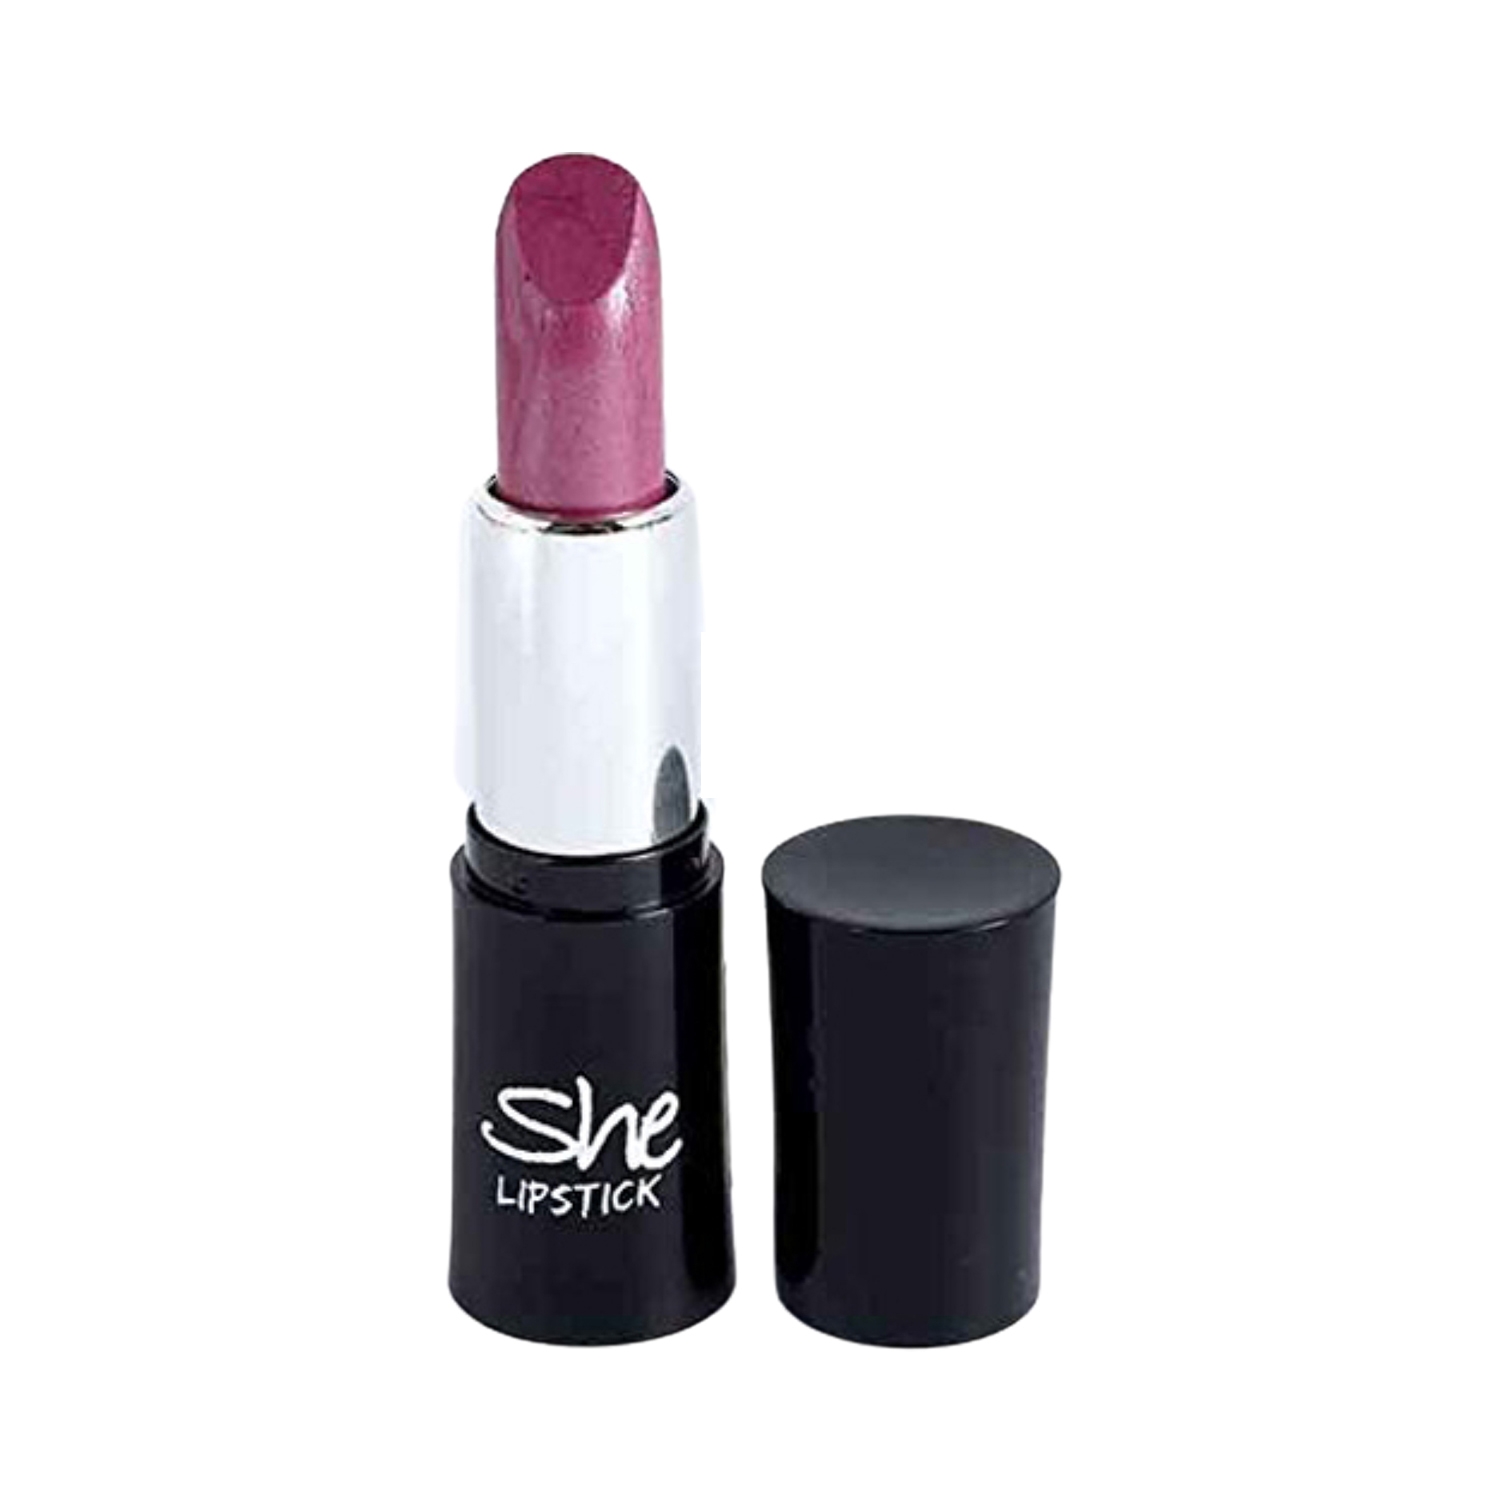 She Super Shine Lipstick - 10 Shade (4.5g)